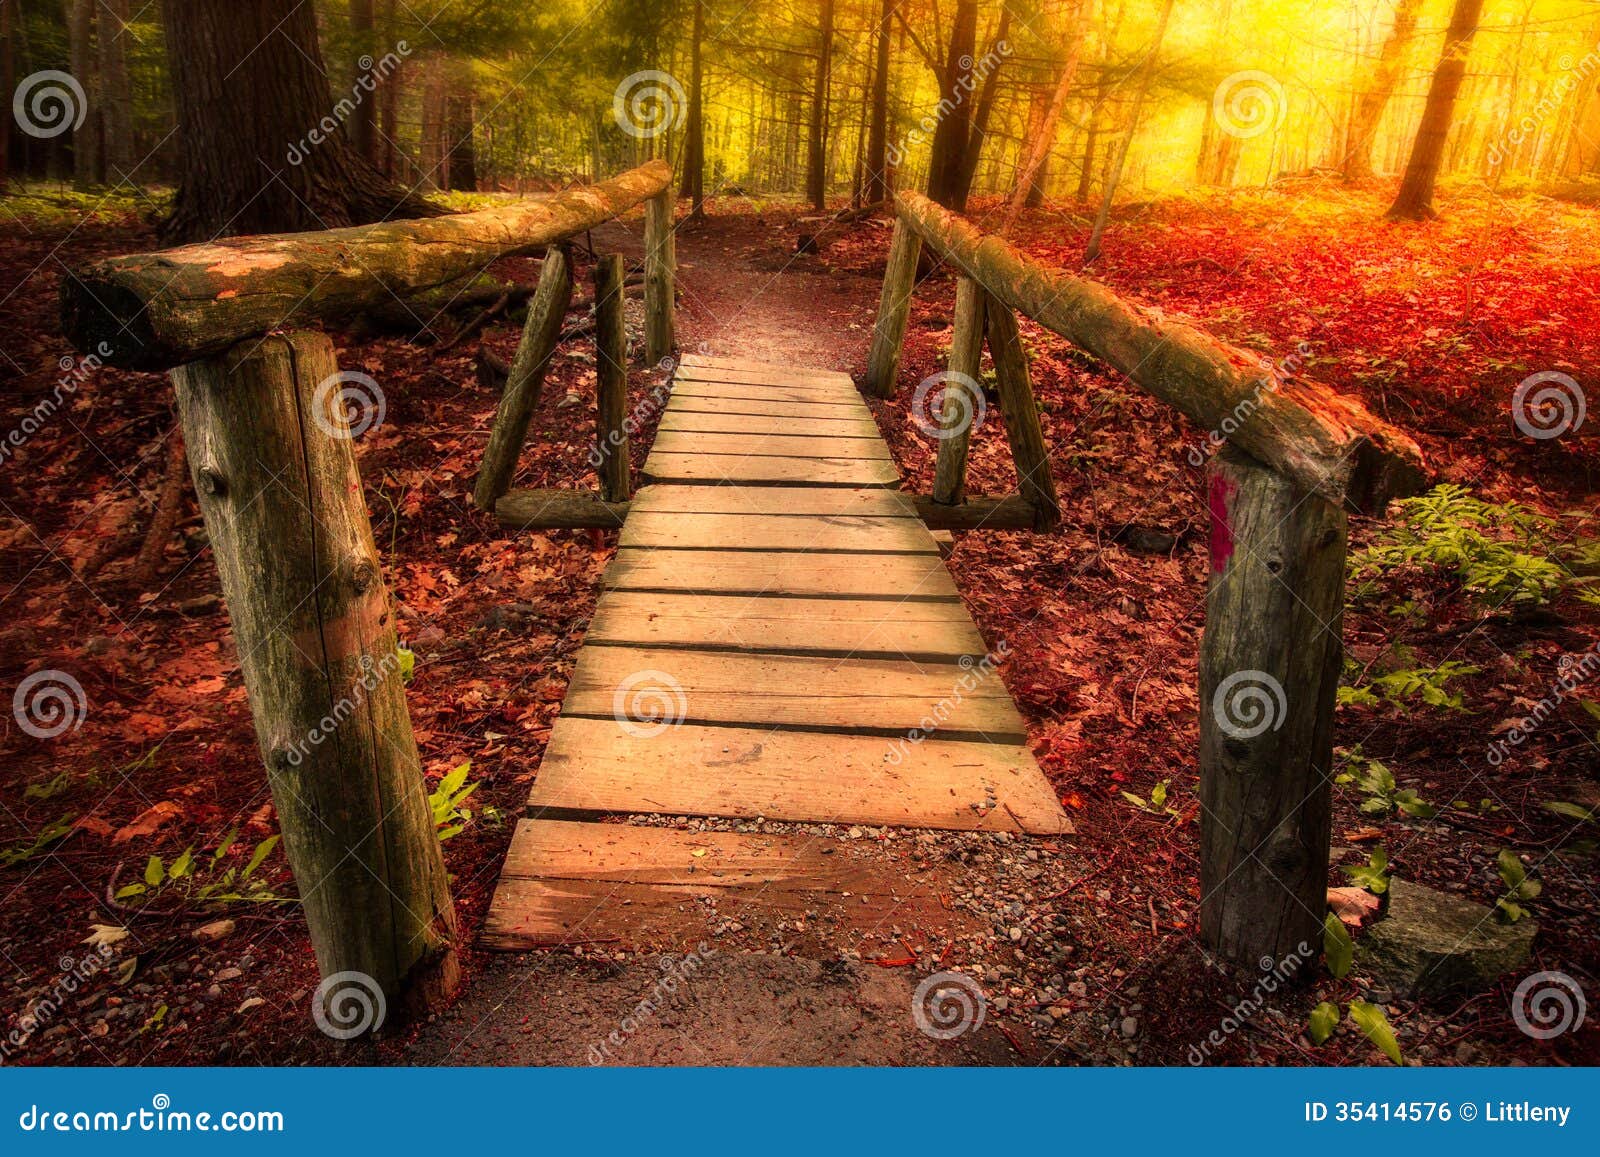 footbridge through forest